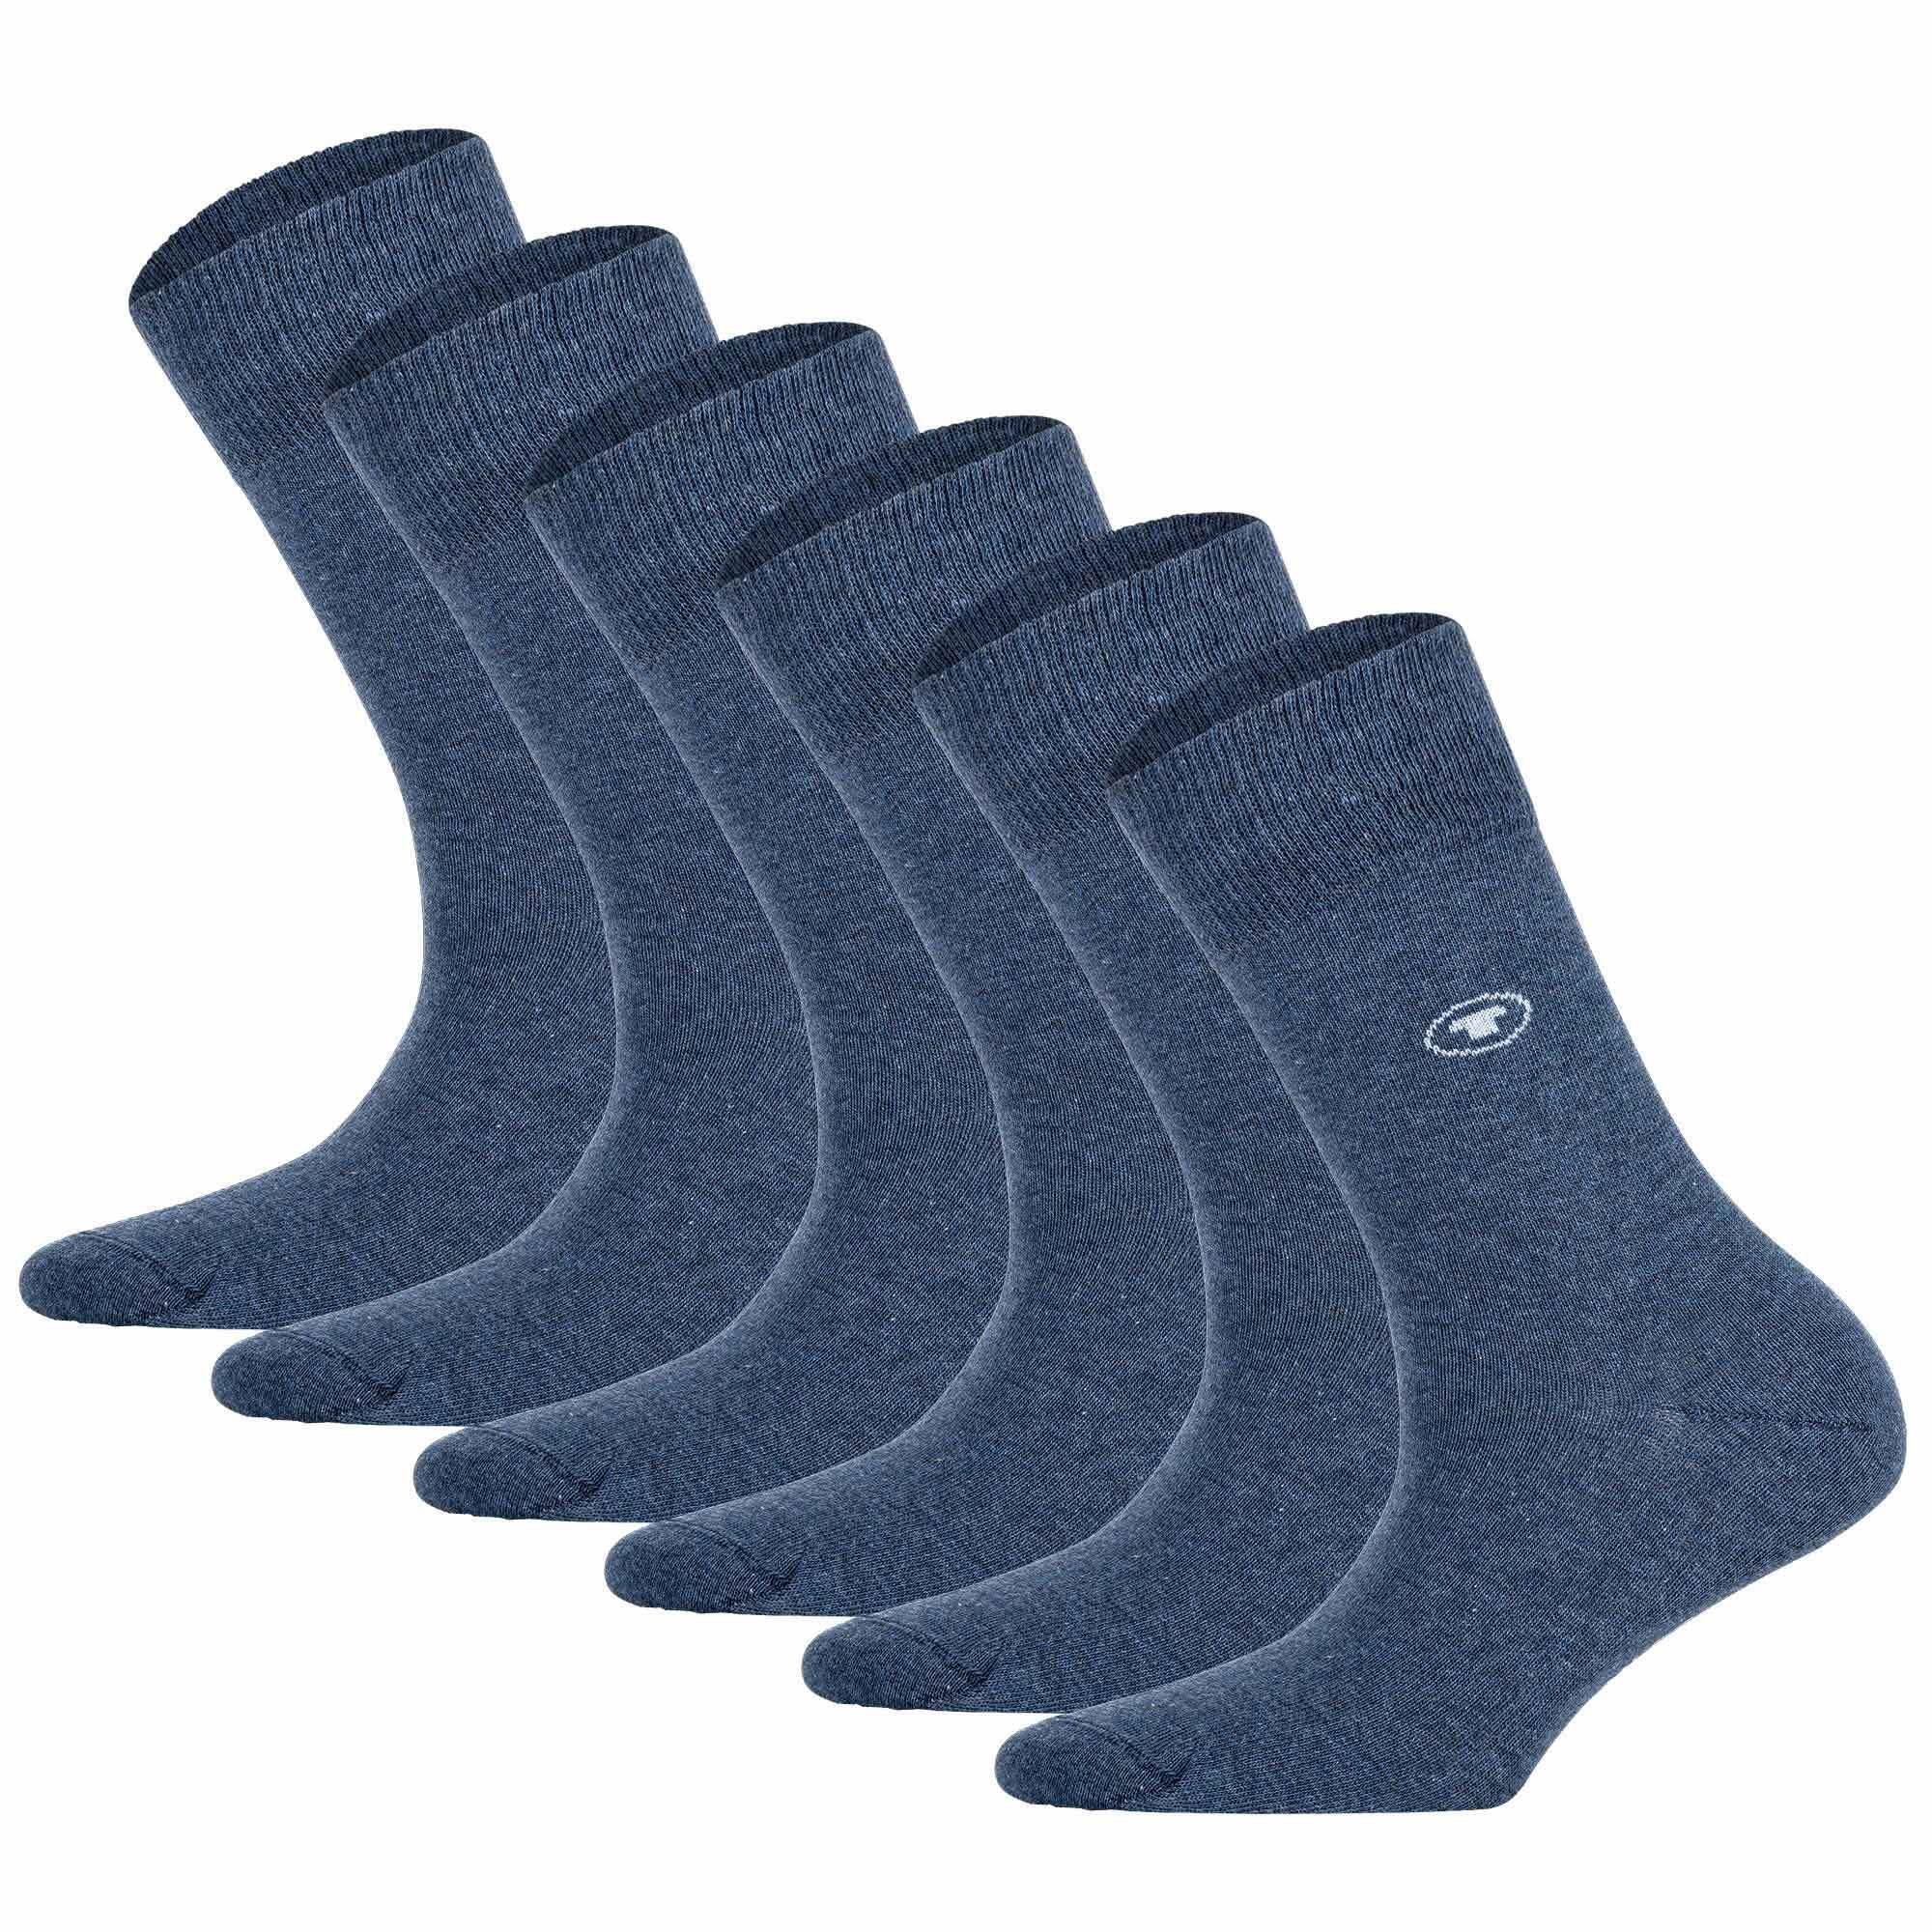 TOM TAILOR Kurzsocken Damen Socken 6er Pack - Basic, Baumwollmischung